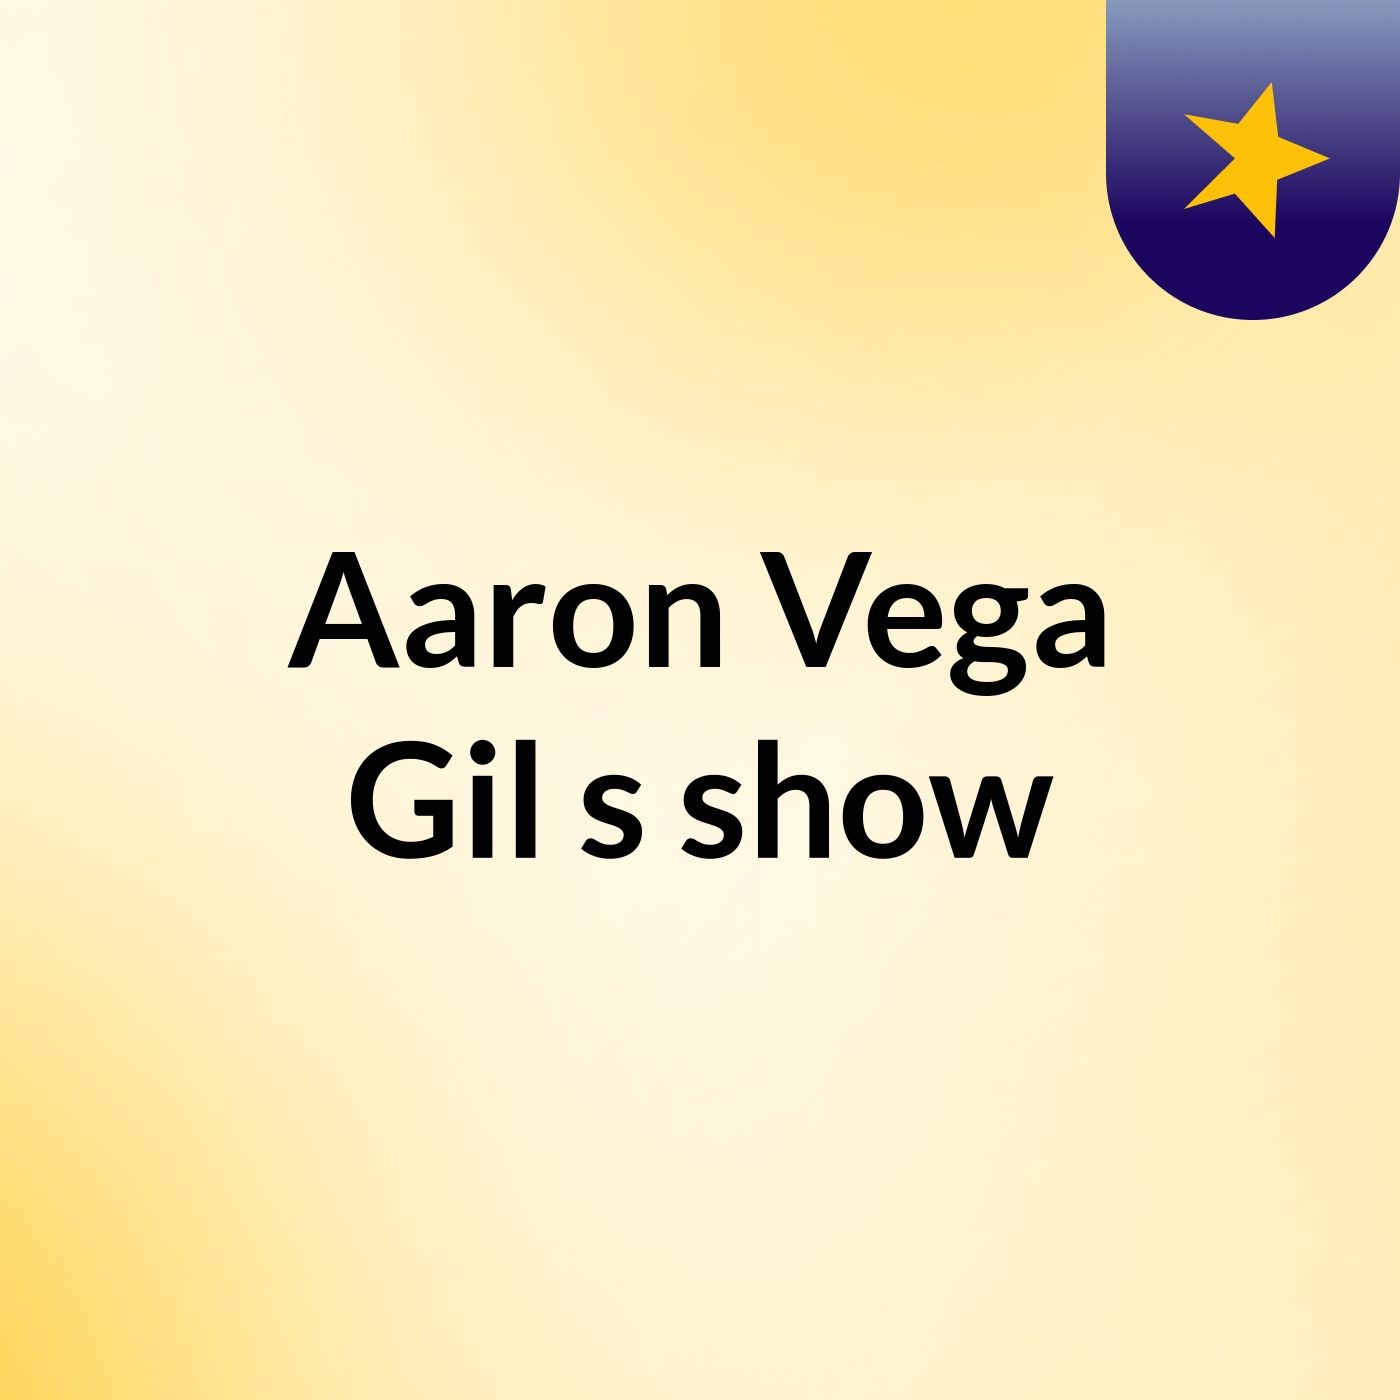 Aaron Vega Gil's show